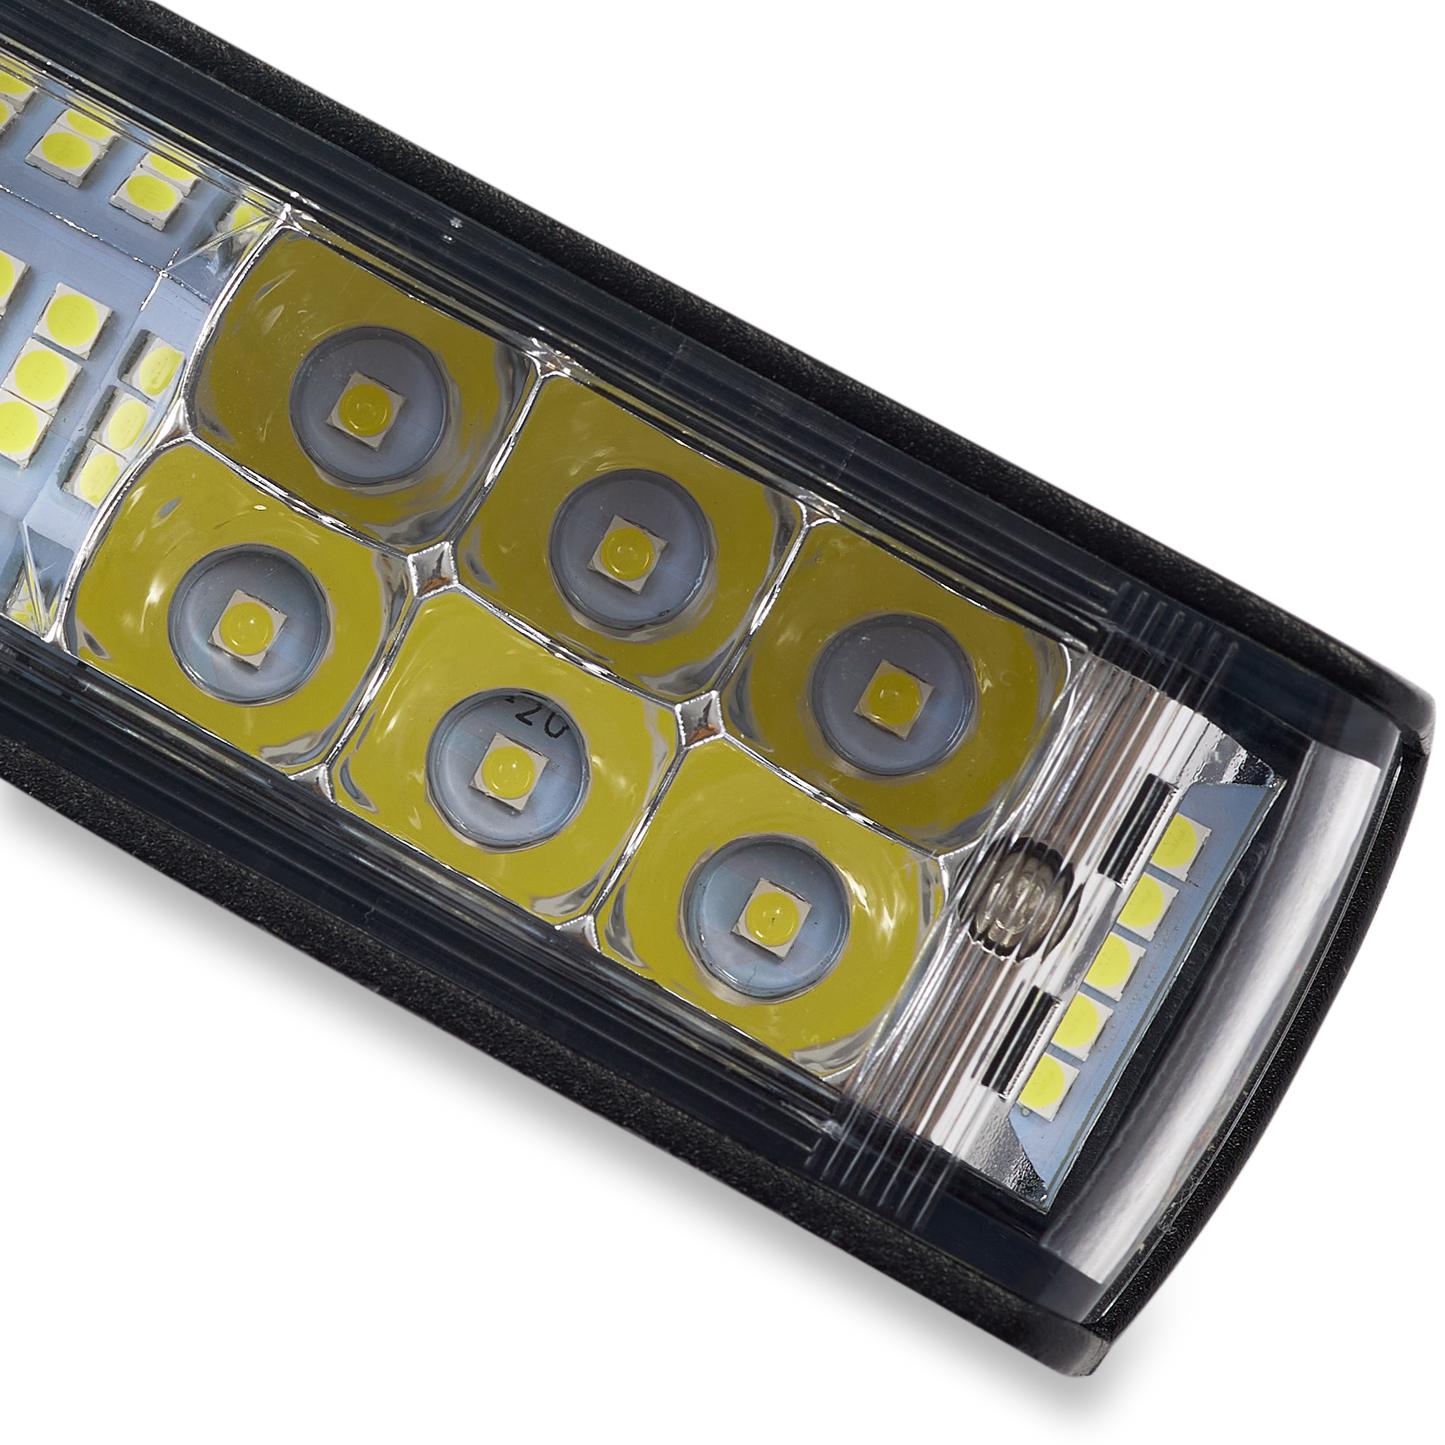 GritShift Blinder LED Light Bar Headlight MX4 - REVRides